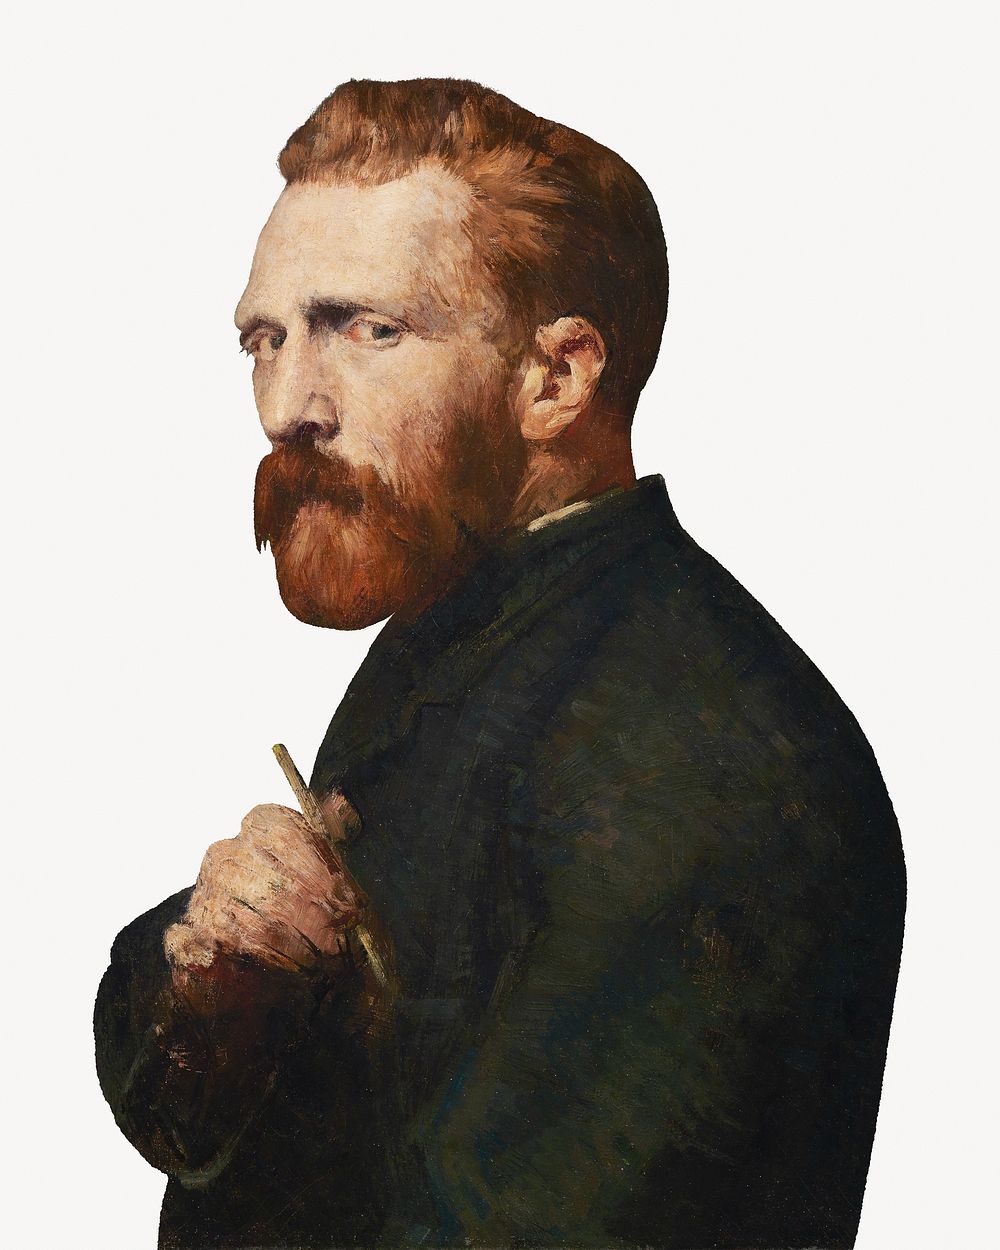 Portrait of Vincent Van Gogh, vintage illustration.   Remastered by rawpixel